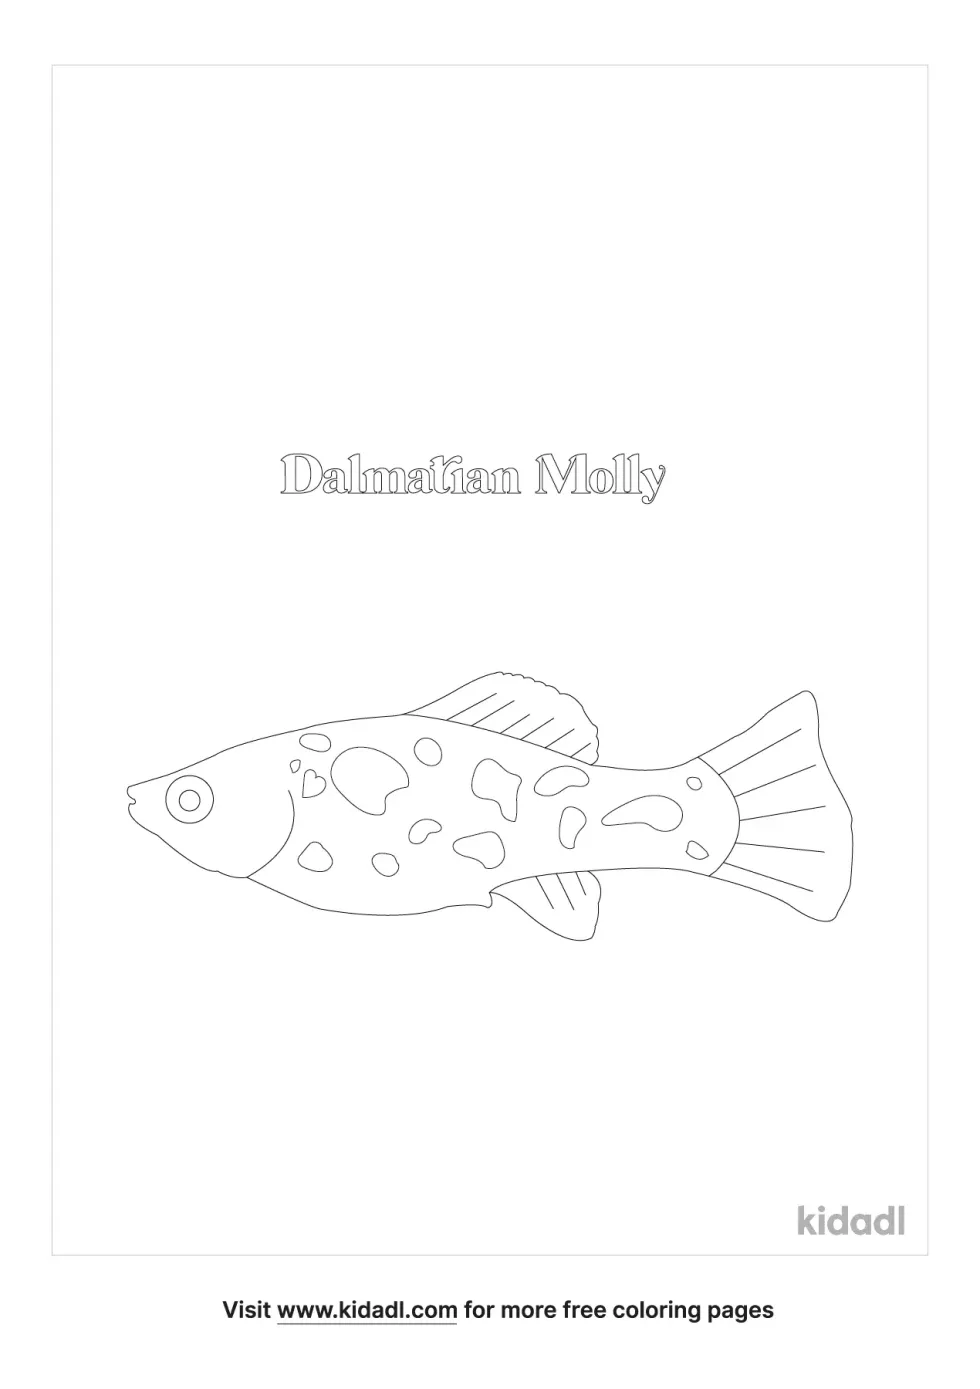 Dalmatian Molly Fish Coloring Page